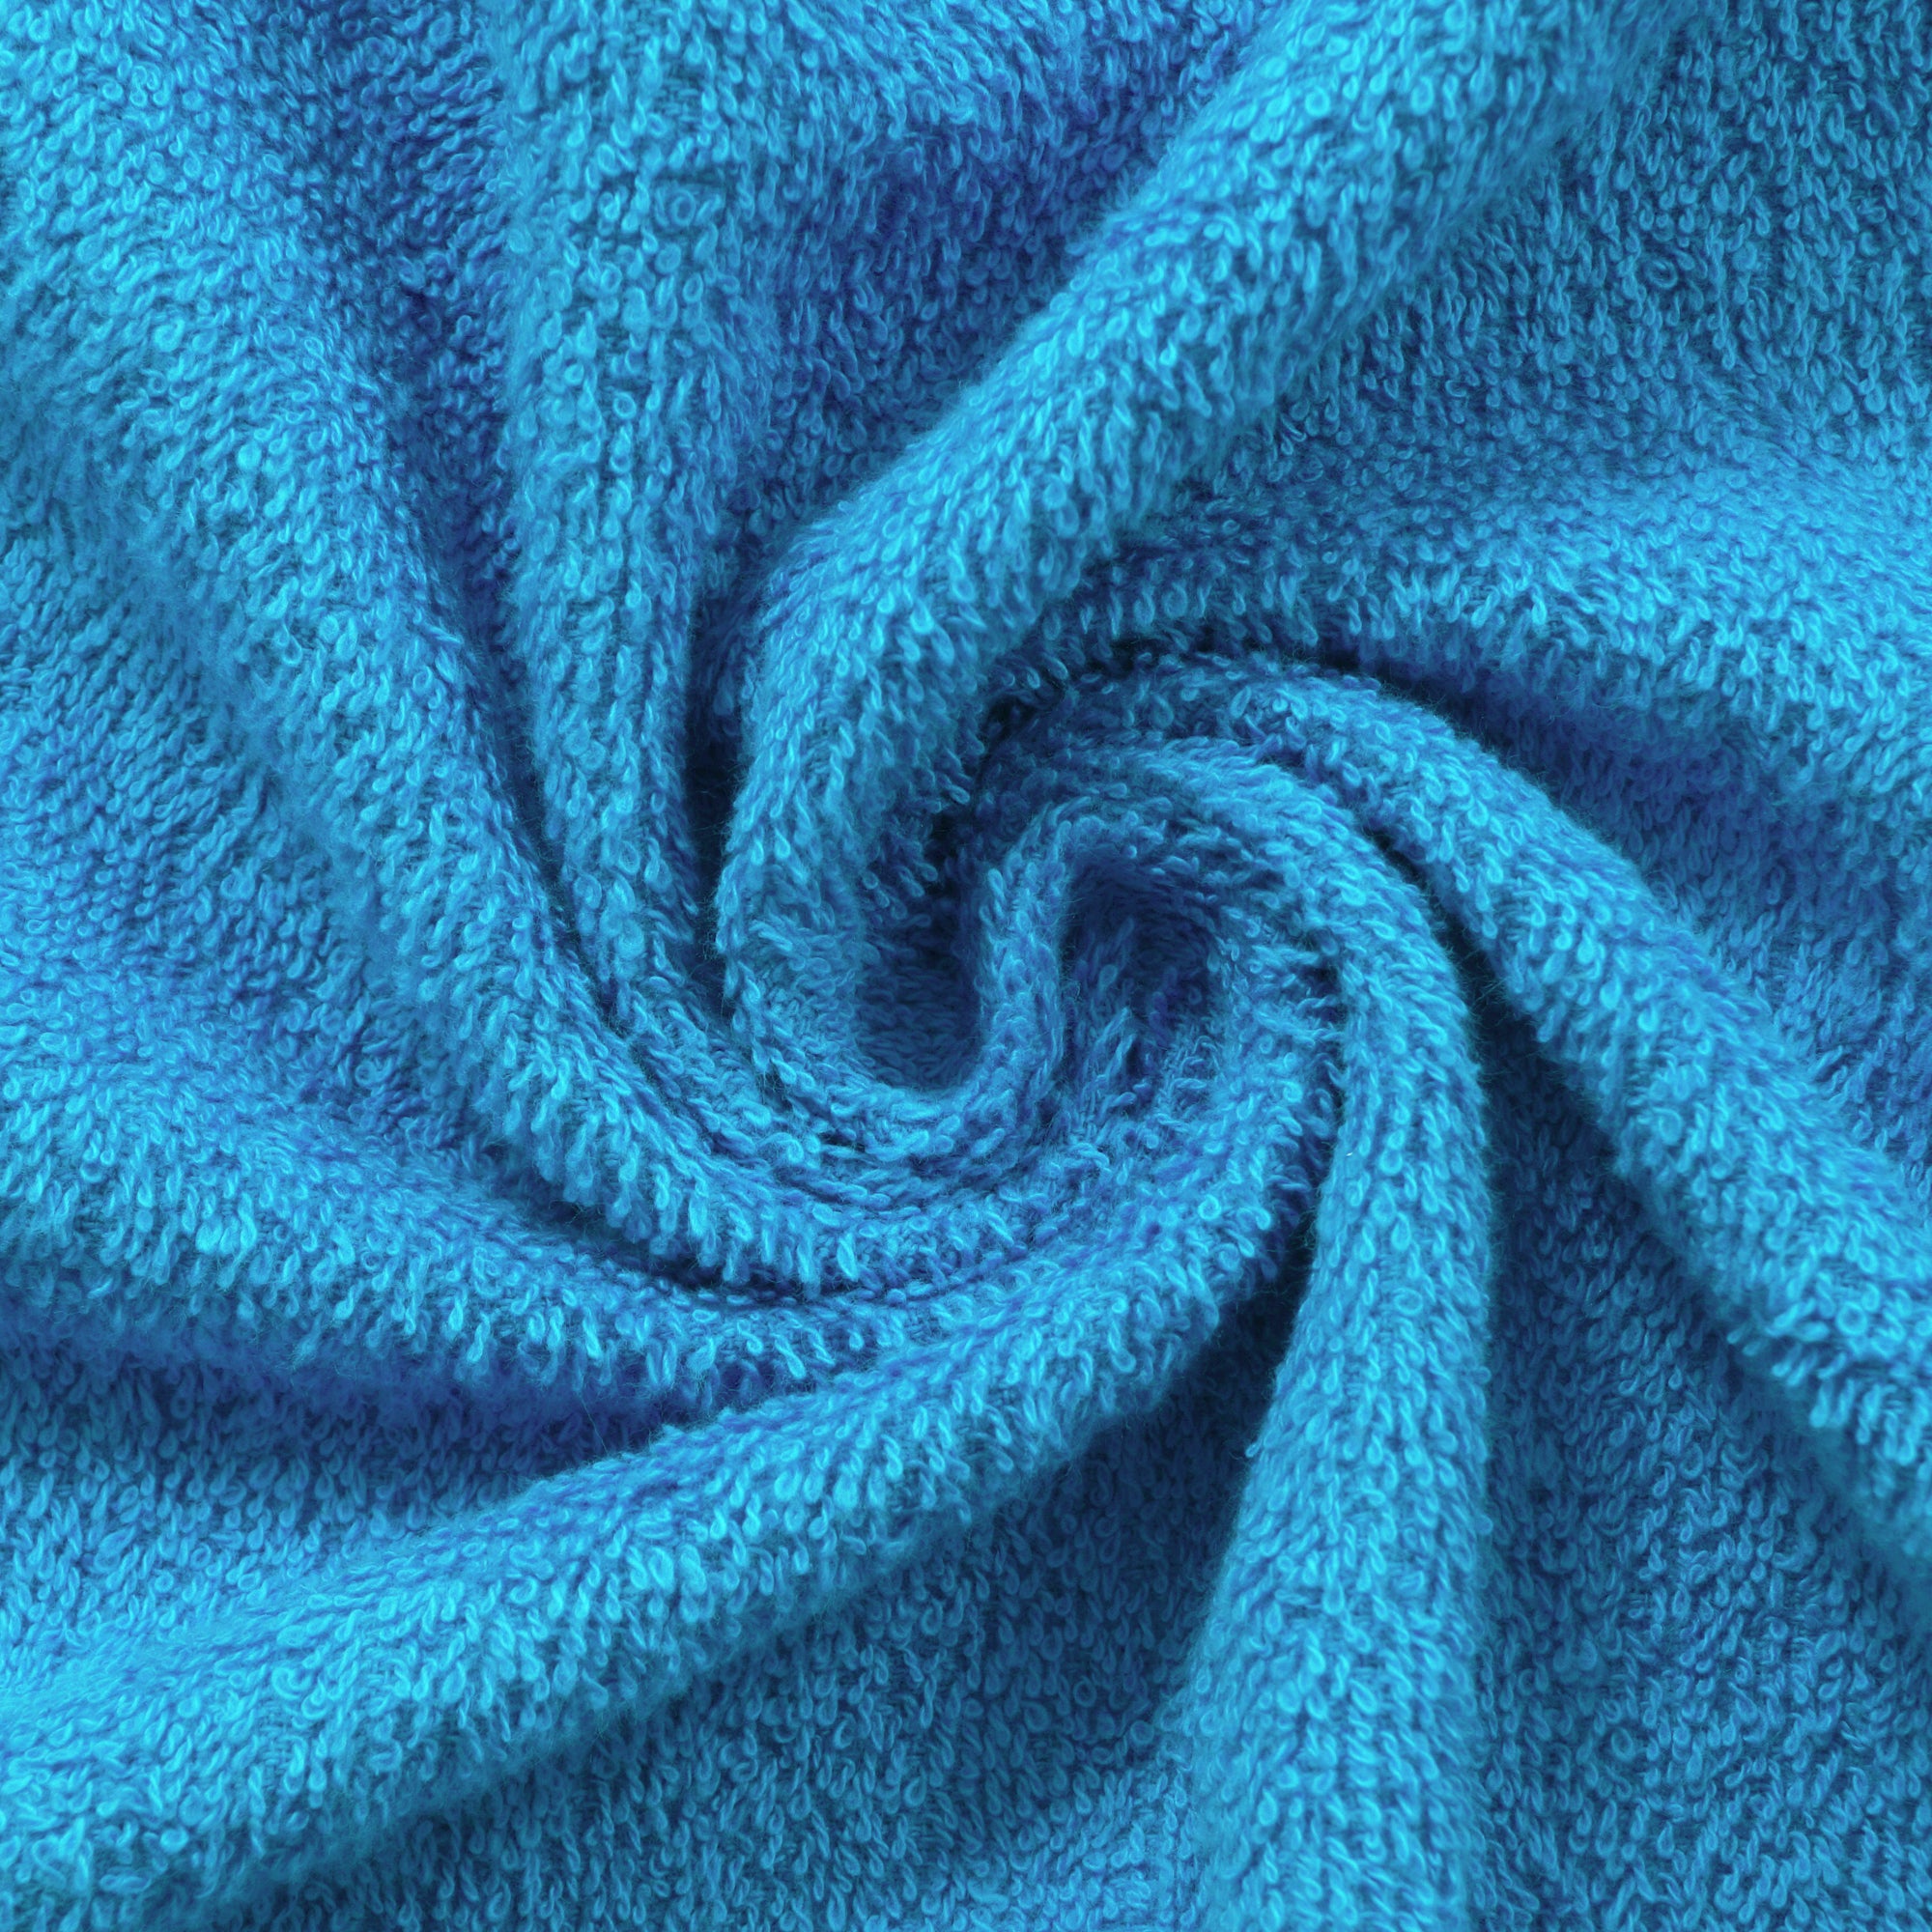 Story@Home 3 Units 100% Cotton Bath Towels - Blue